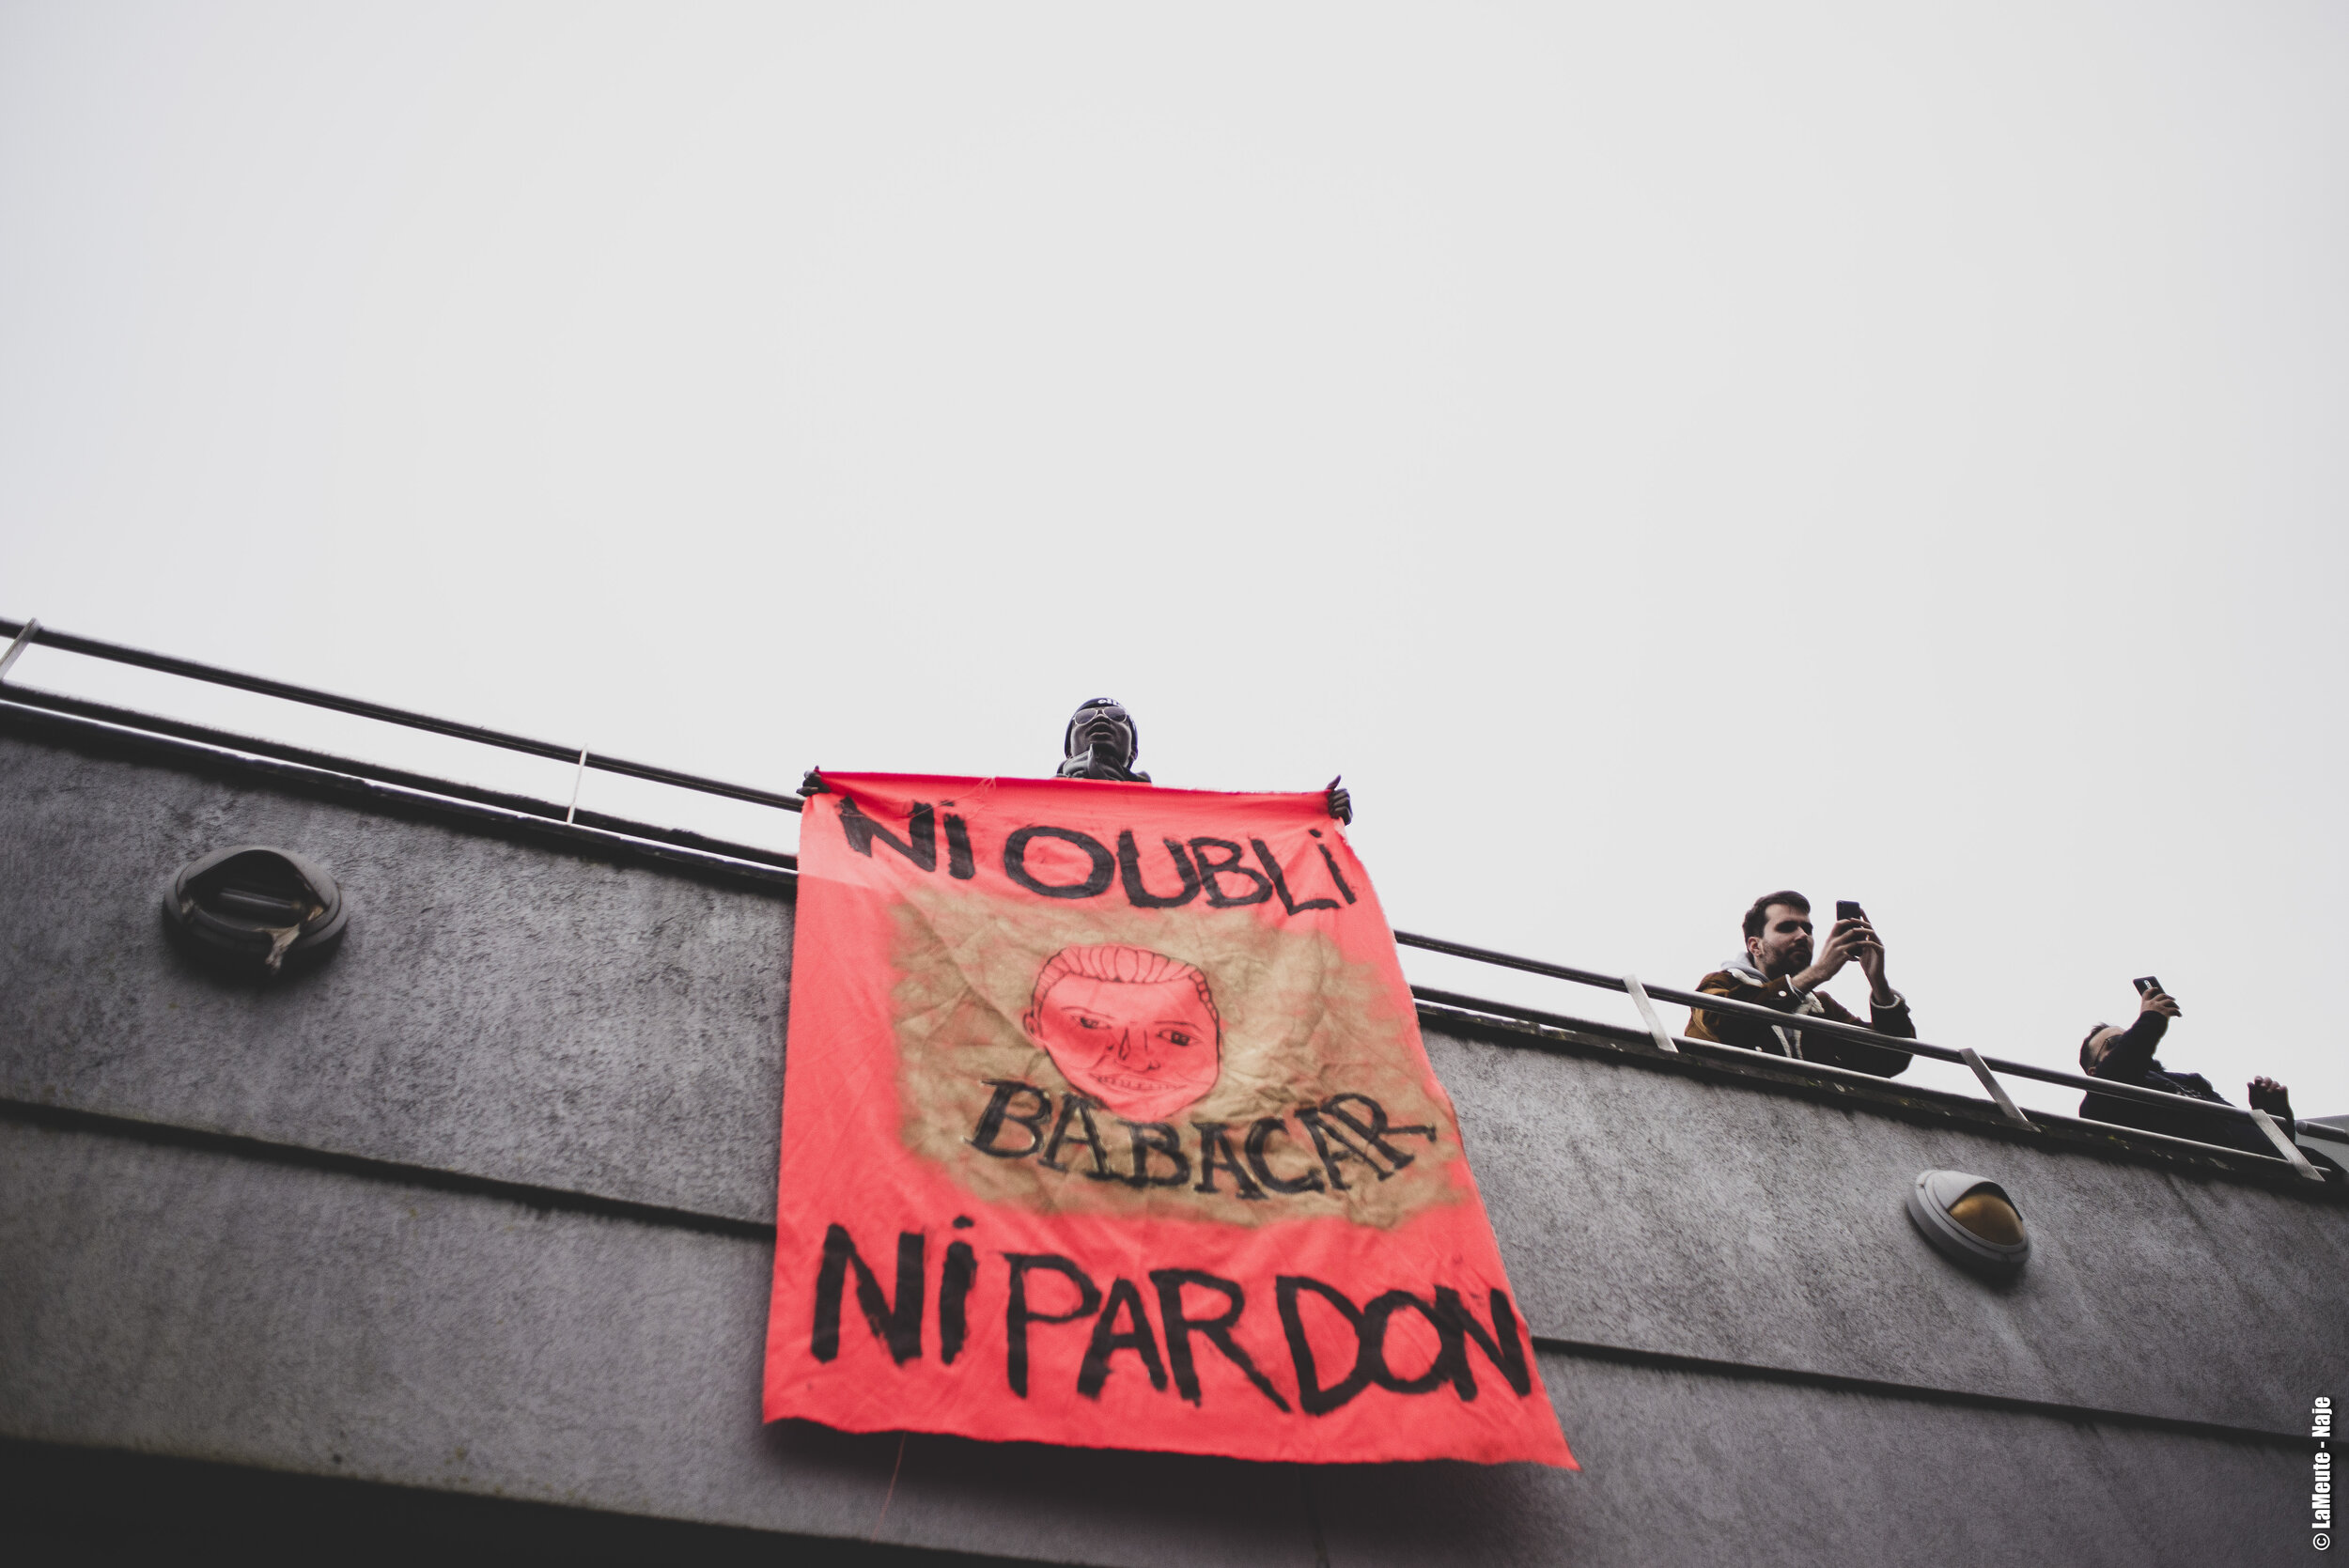   Sur une passerelle au dessus du parking, et alors qu’une nouvelle prise de parole s’organise, un manifestant déploie une banderole.  ©LaMeute - Naje 